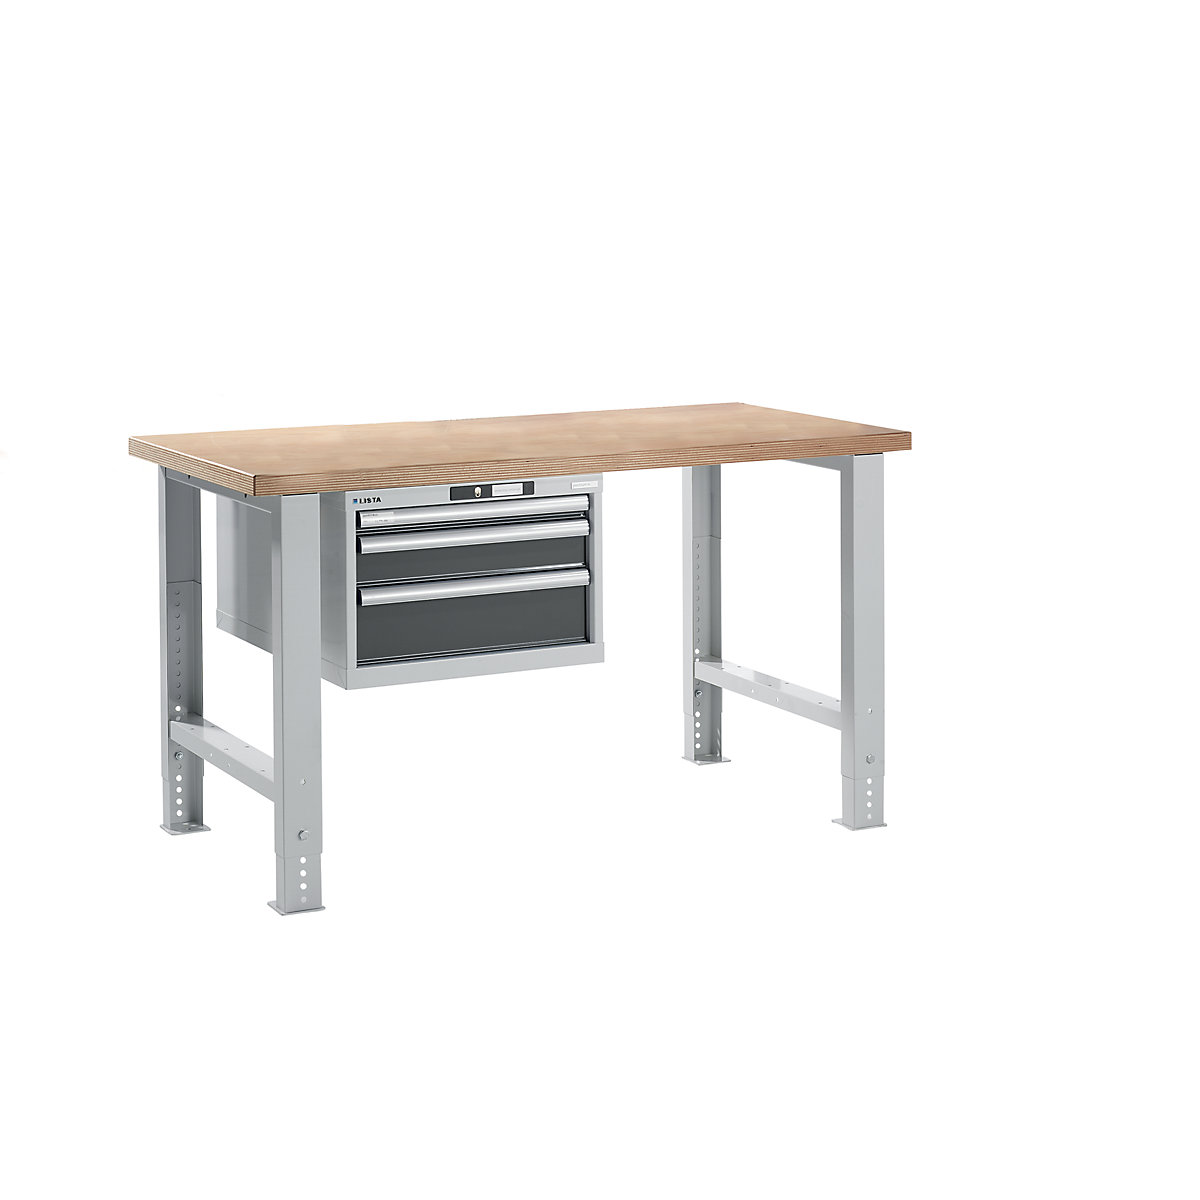 Dielenský stôl v stavebnicovom systéme – LISTA, výška 740 – 1090 mm, závesná skriňa, 3 zásuvky, šedá metalíza, šírka stola 1500 mm-16